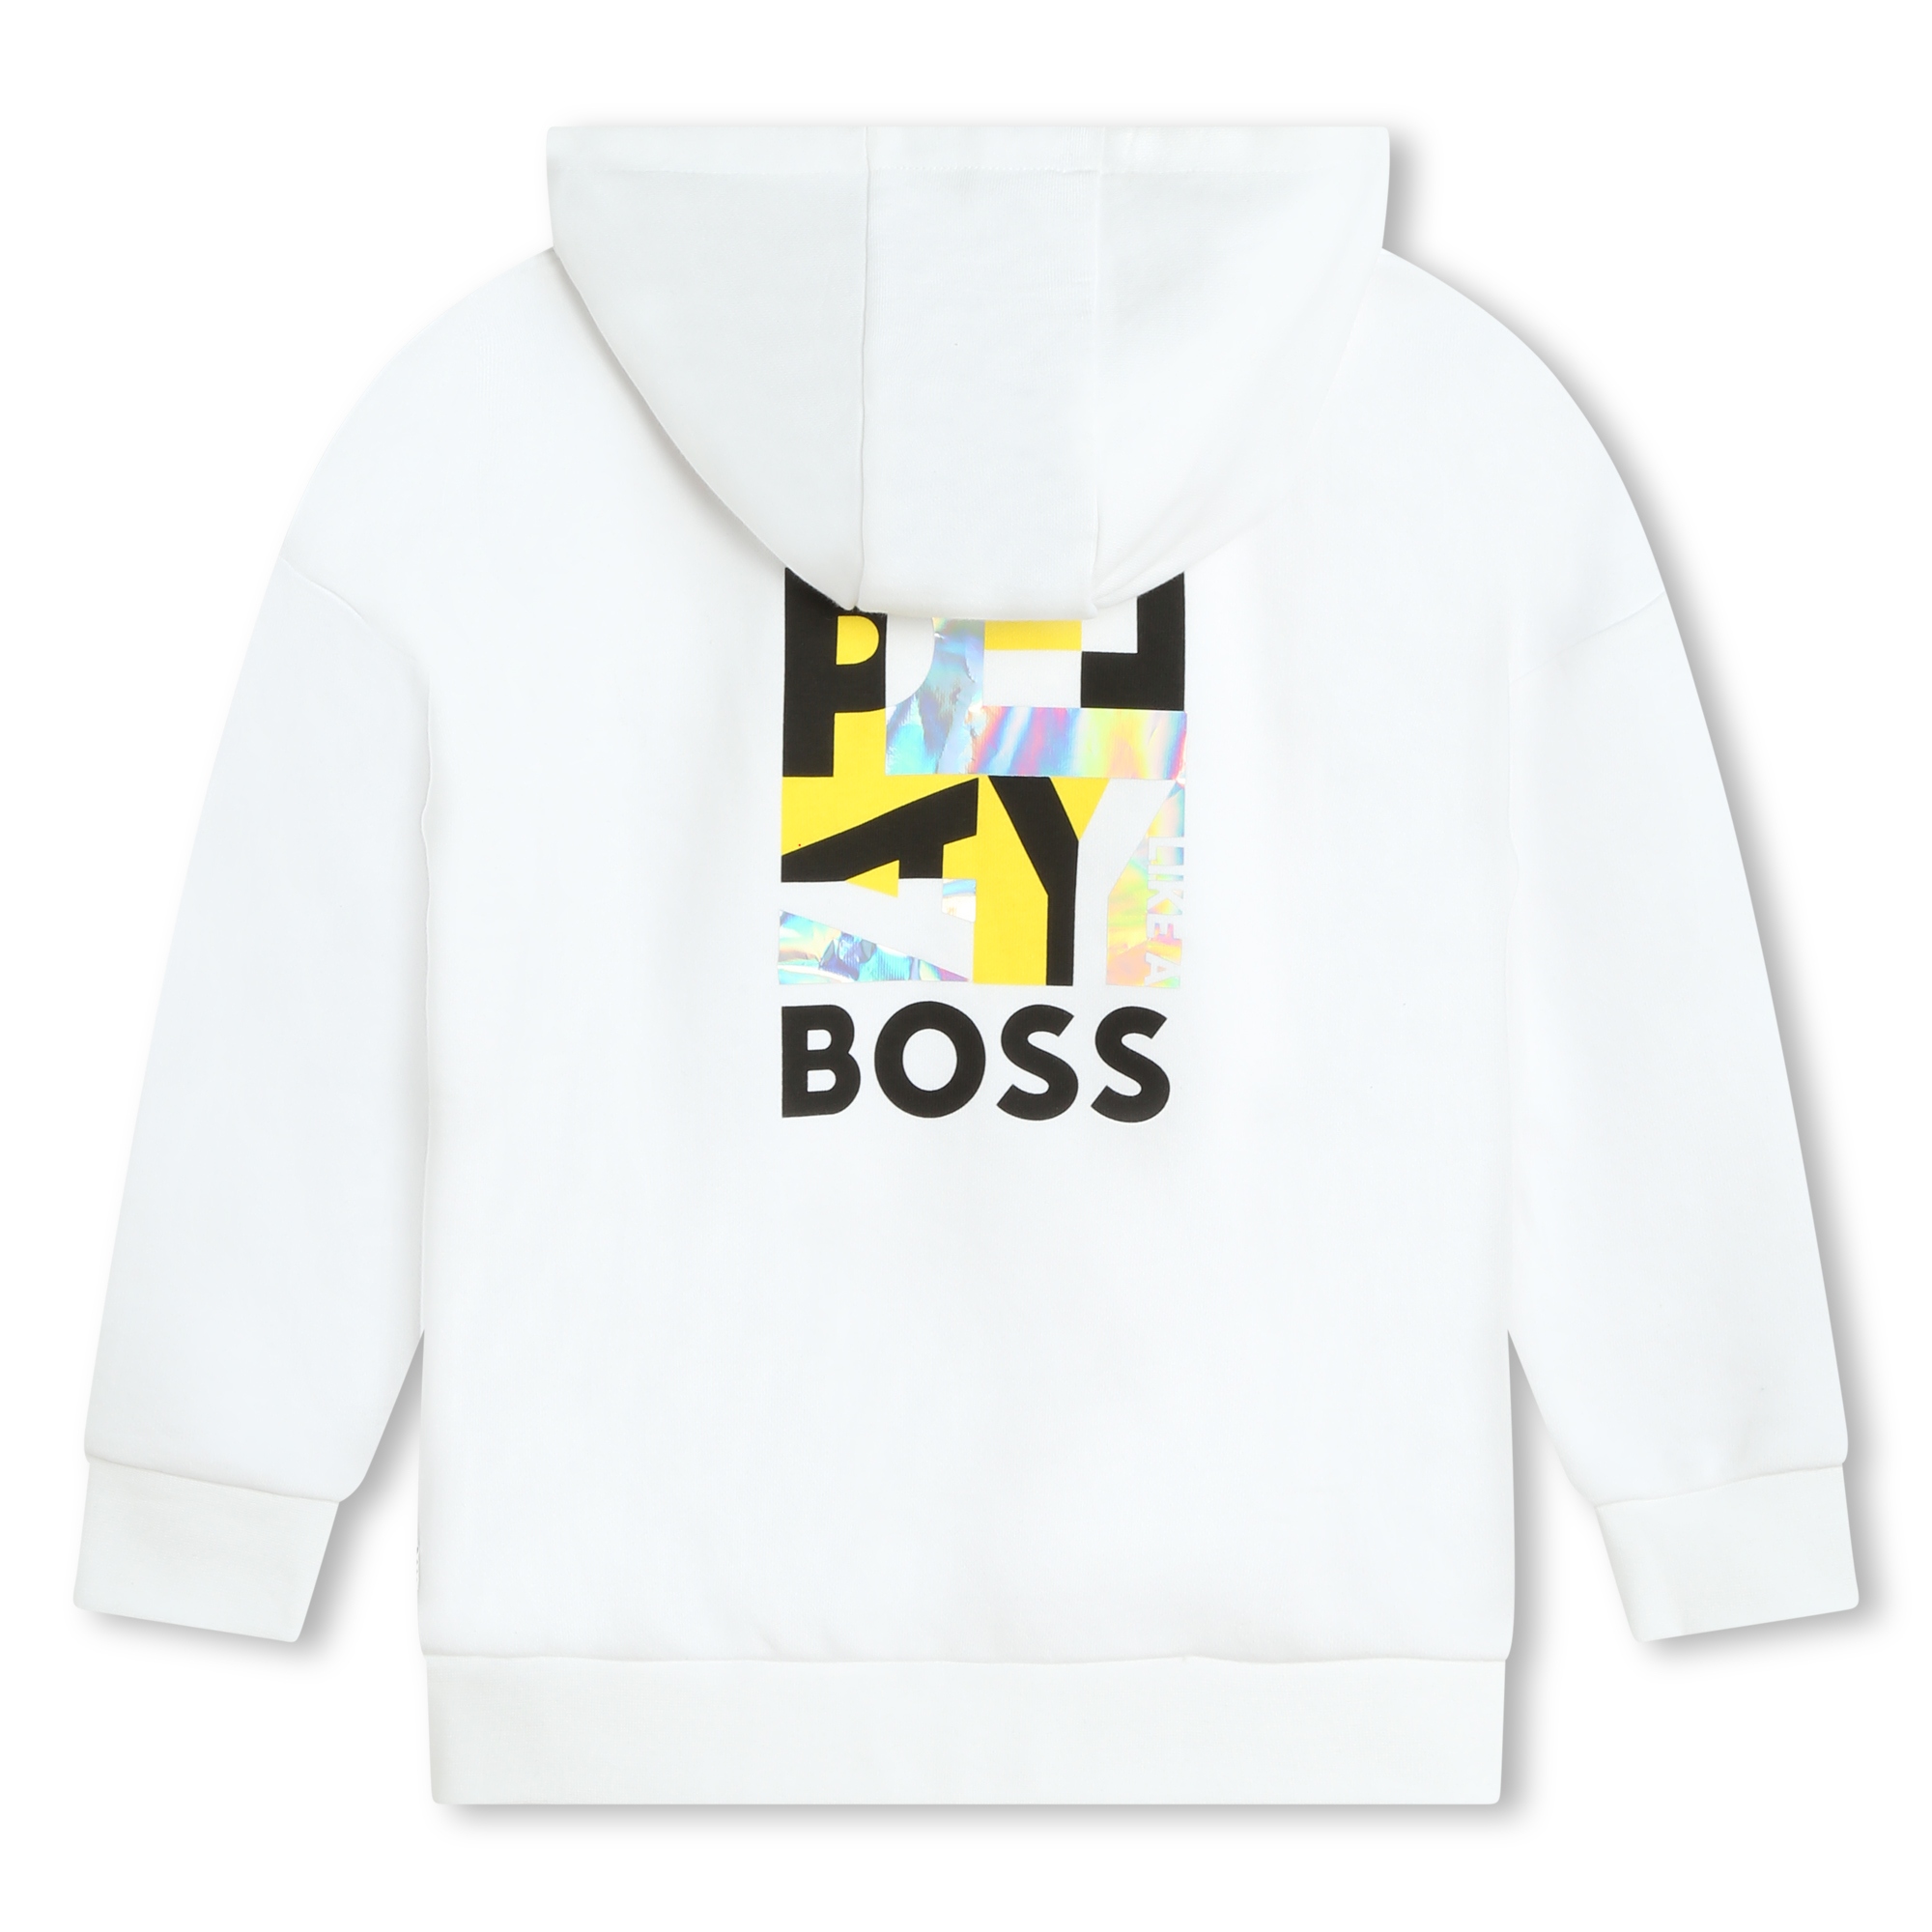 Hooded sweatshirt BOSS for BOY